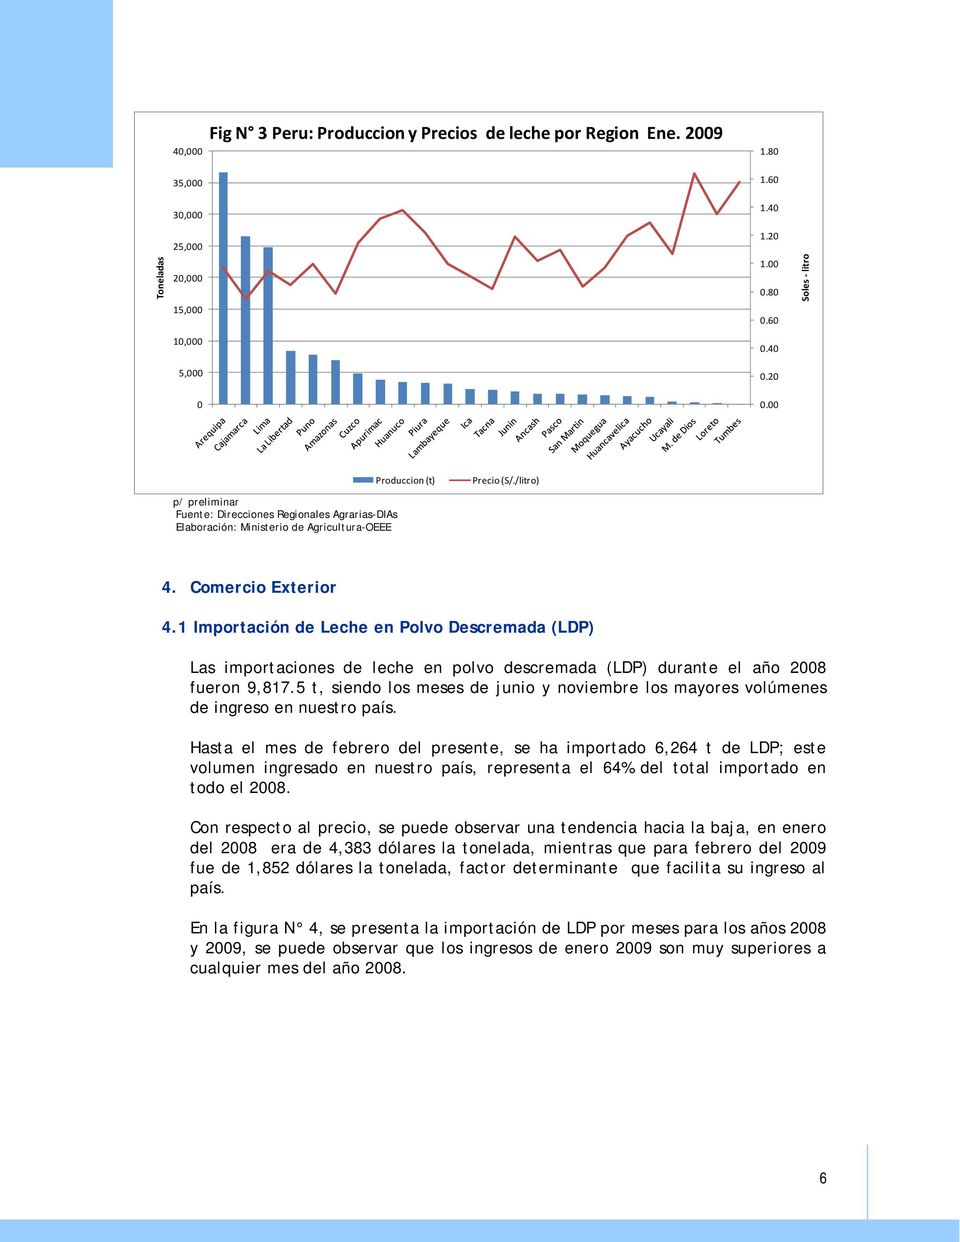 1 Importación de Leche en Polvo Descremada (LDP) Las importaciones de leche en polvo descremada (LDP) durante el año 2008 fueron 9,817.